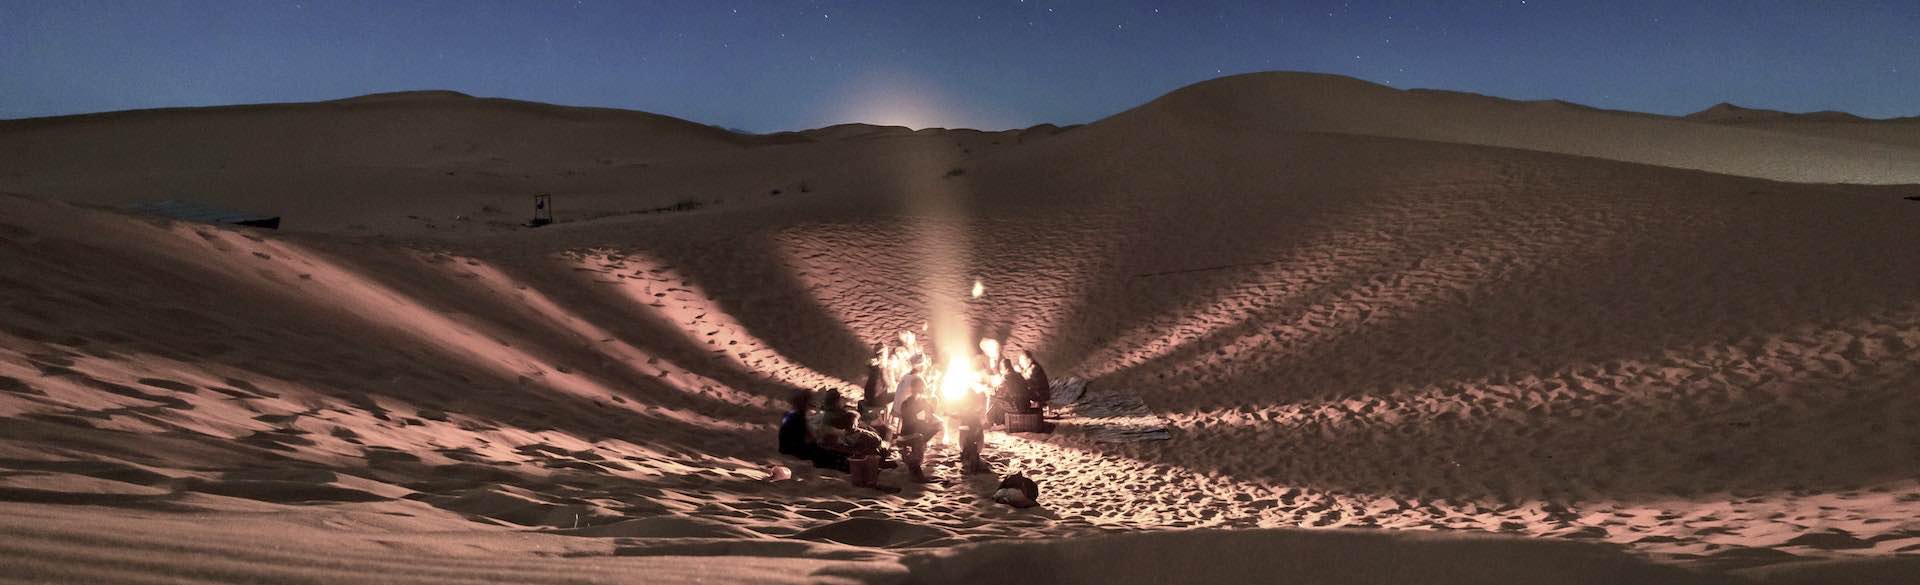 Burning Man Principle Radical Self-Reliance